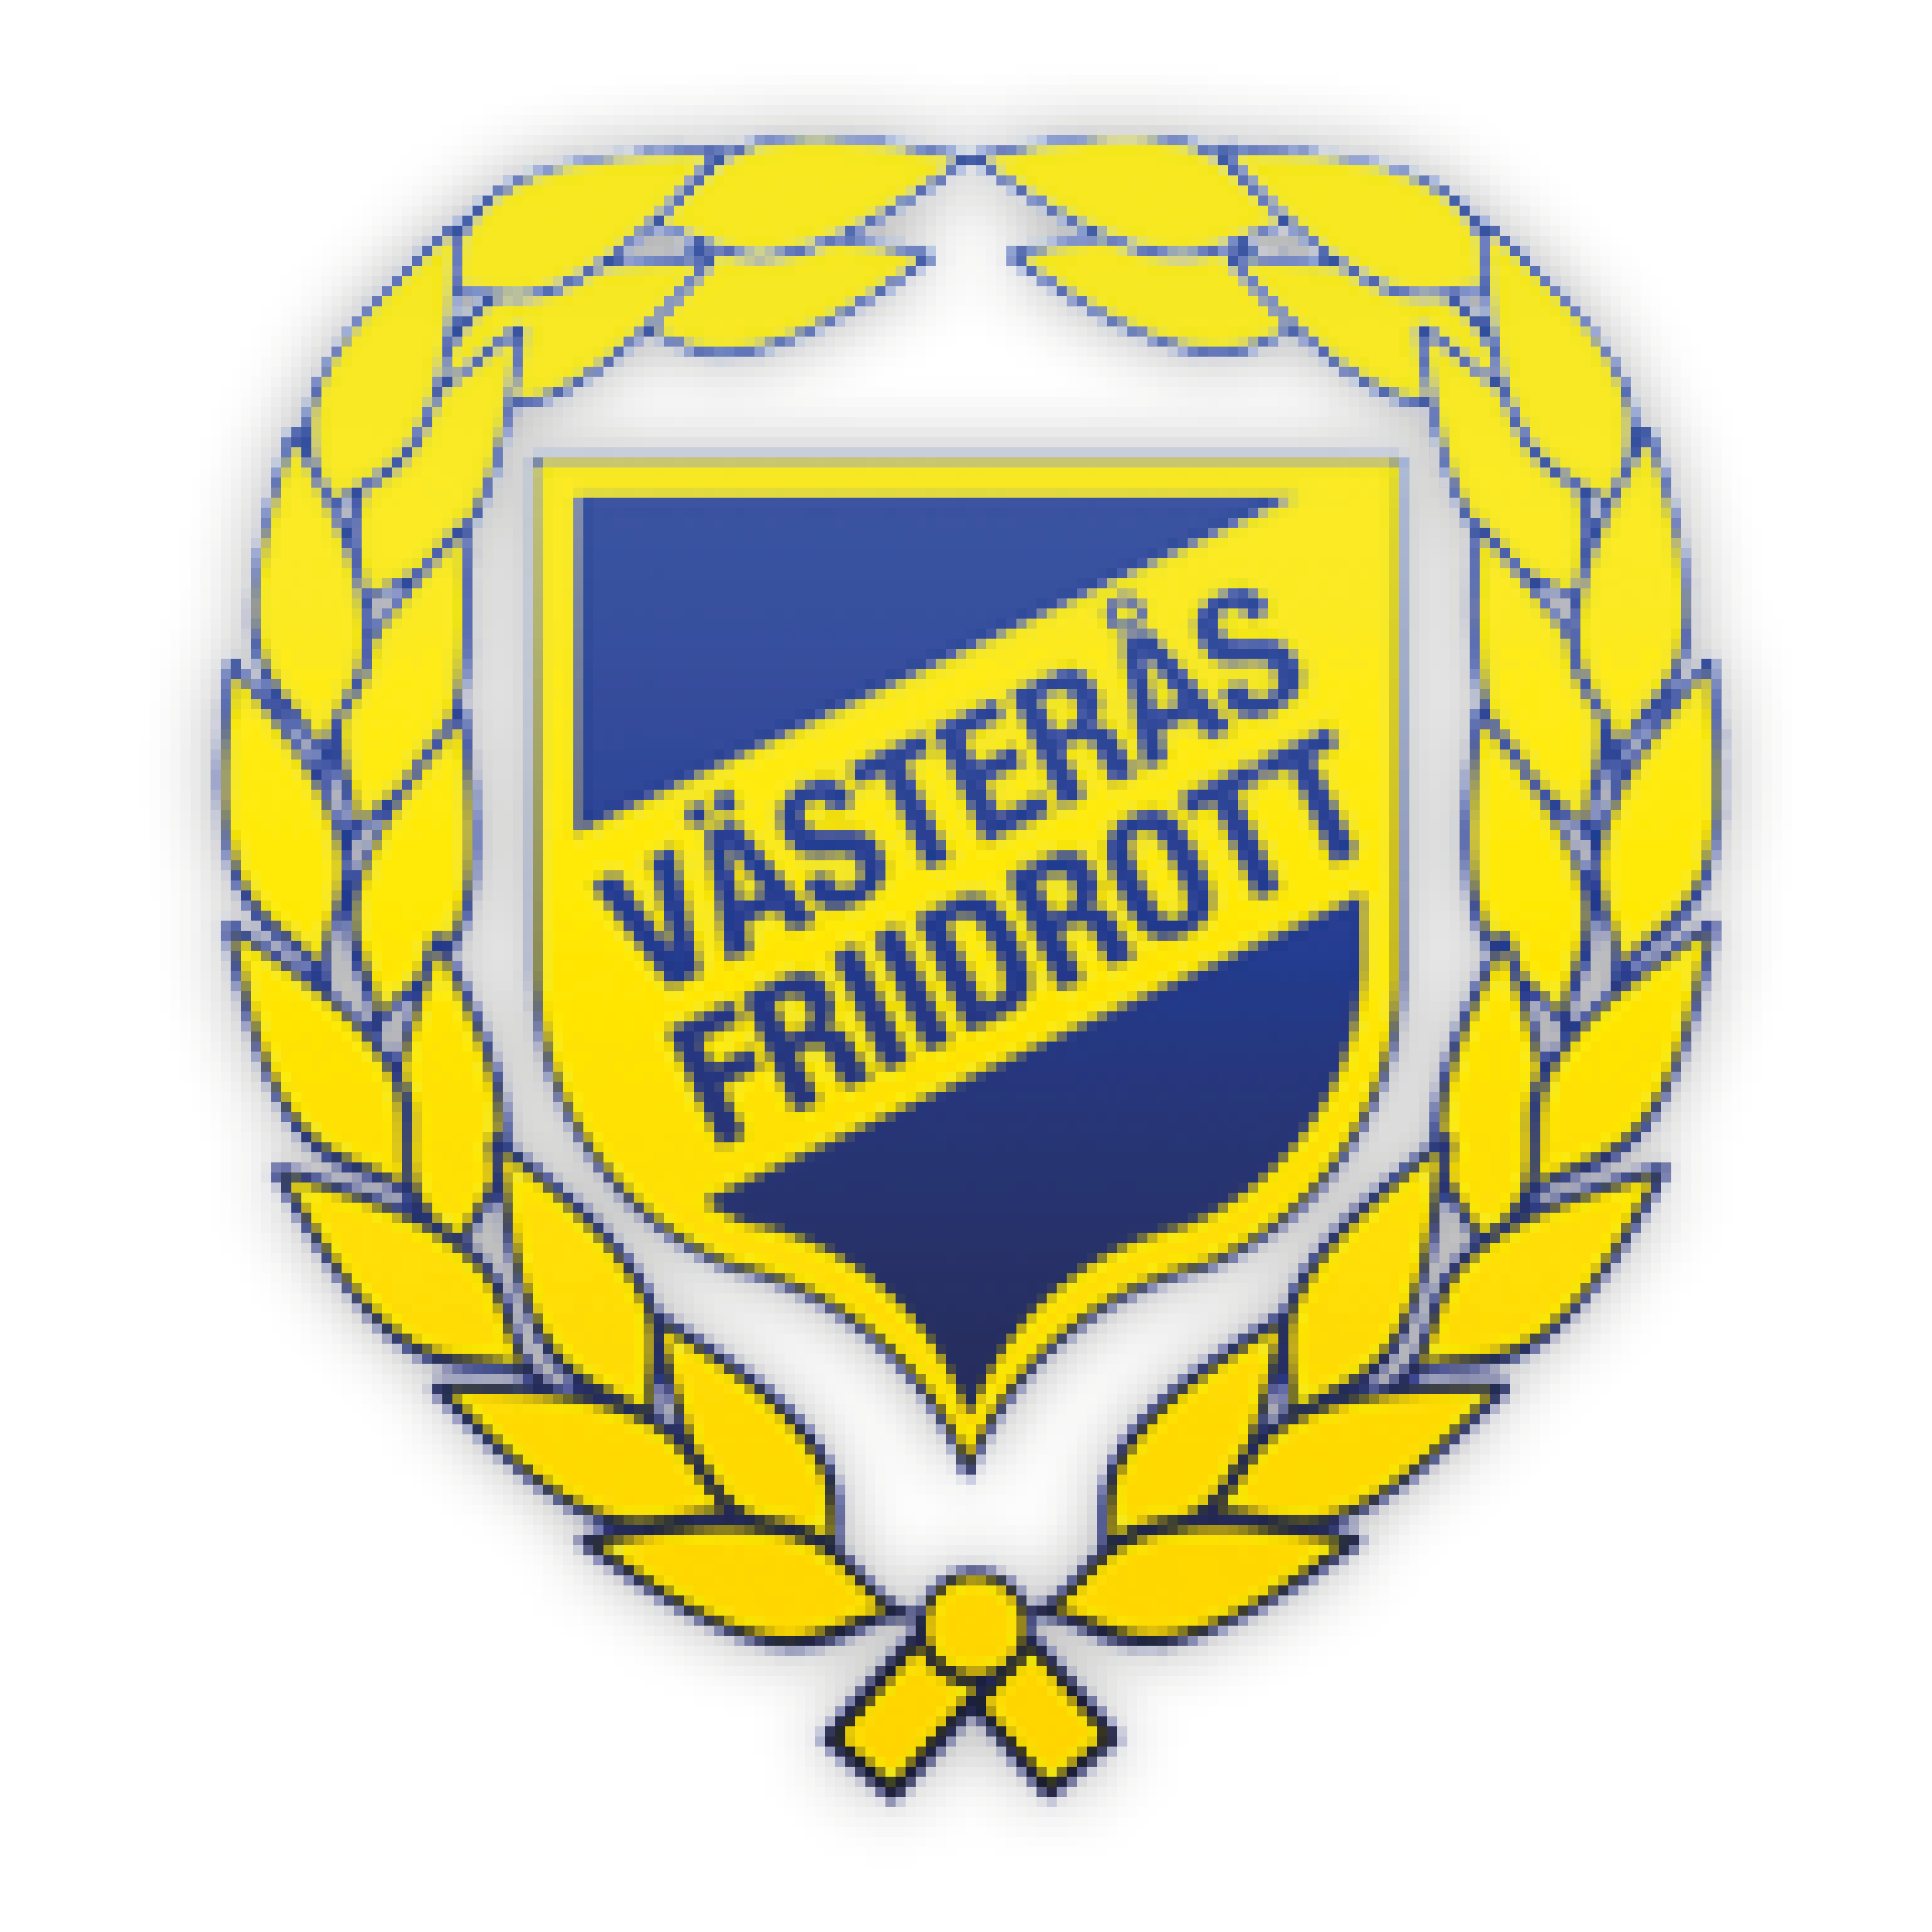 Västerås Friidrott